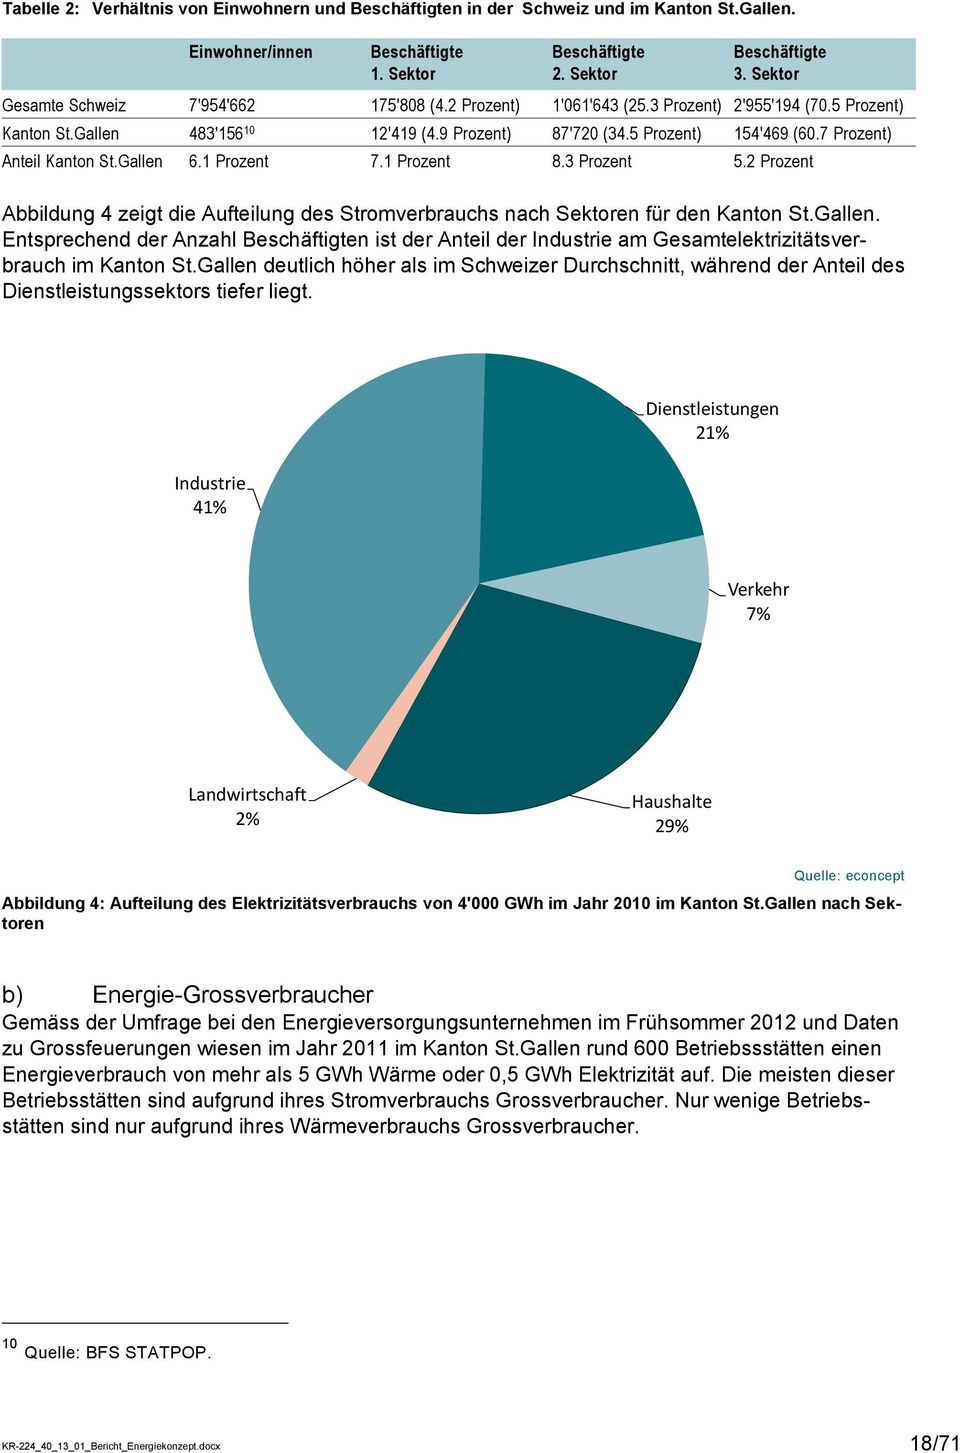 7 Prozent) Anteil Kanton St.Gallen 6.1 Prozent 7.1 Prozent 8.3 Prozent 5.2 Prozent Abbildung 4 zeigt die Aufteilung des Stromverbrauchs nach Sektoren für den Kanton St.Gallen. Entsprechend der Anzahl Beschäftigten ist der Anteil der Industrie am Gesamtelektrizitätsverbrauch im Kanton St.